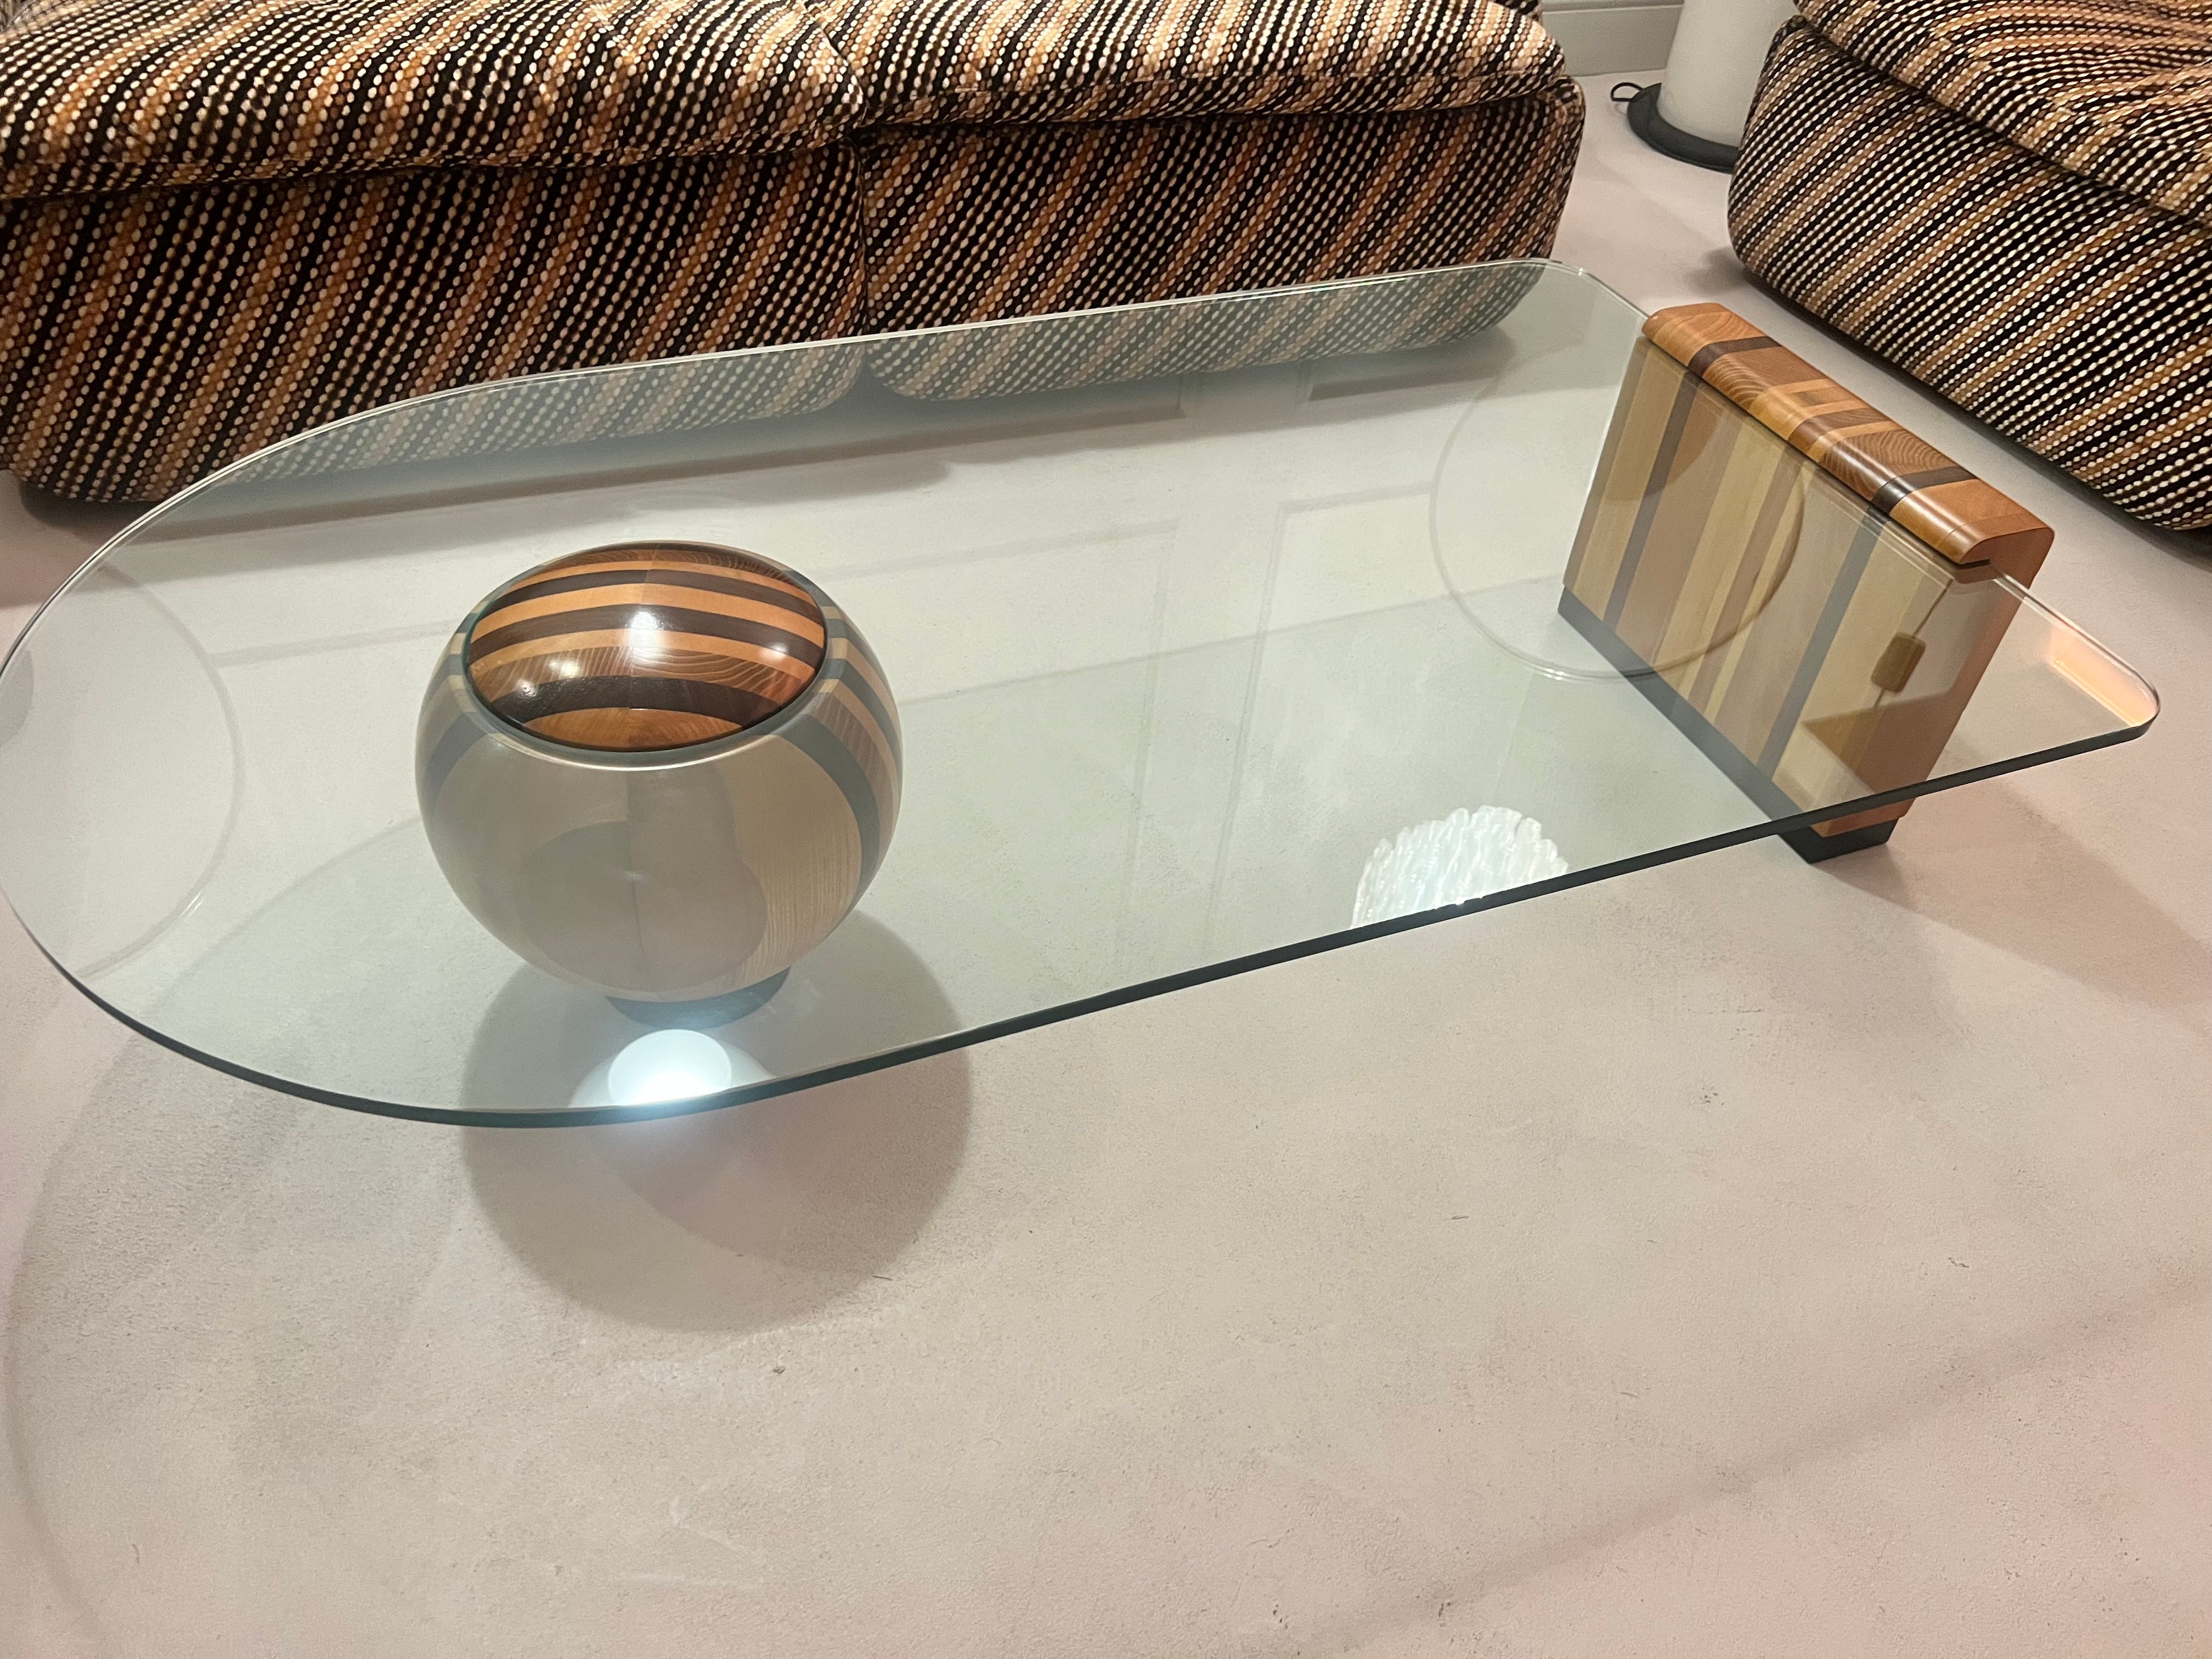 Rarissimo tavolino di Massimo e Lella Vignelli prodotto da Casigliani negli anni Settanta in Italia. Il tavolino è composto da tre pezzi: una ciotola, un elemento di base costituito da diverse fette di legno e il piano in vetro. Il piano in vetro è